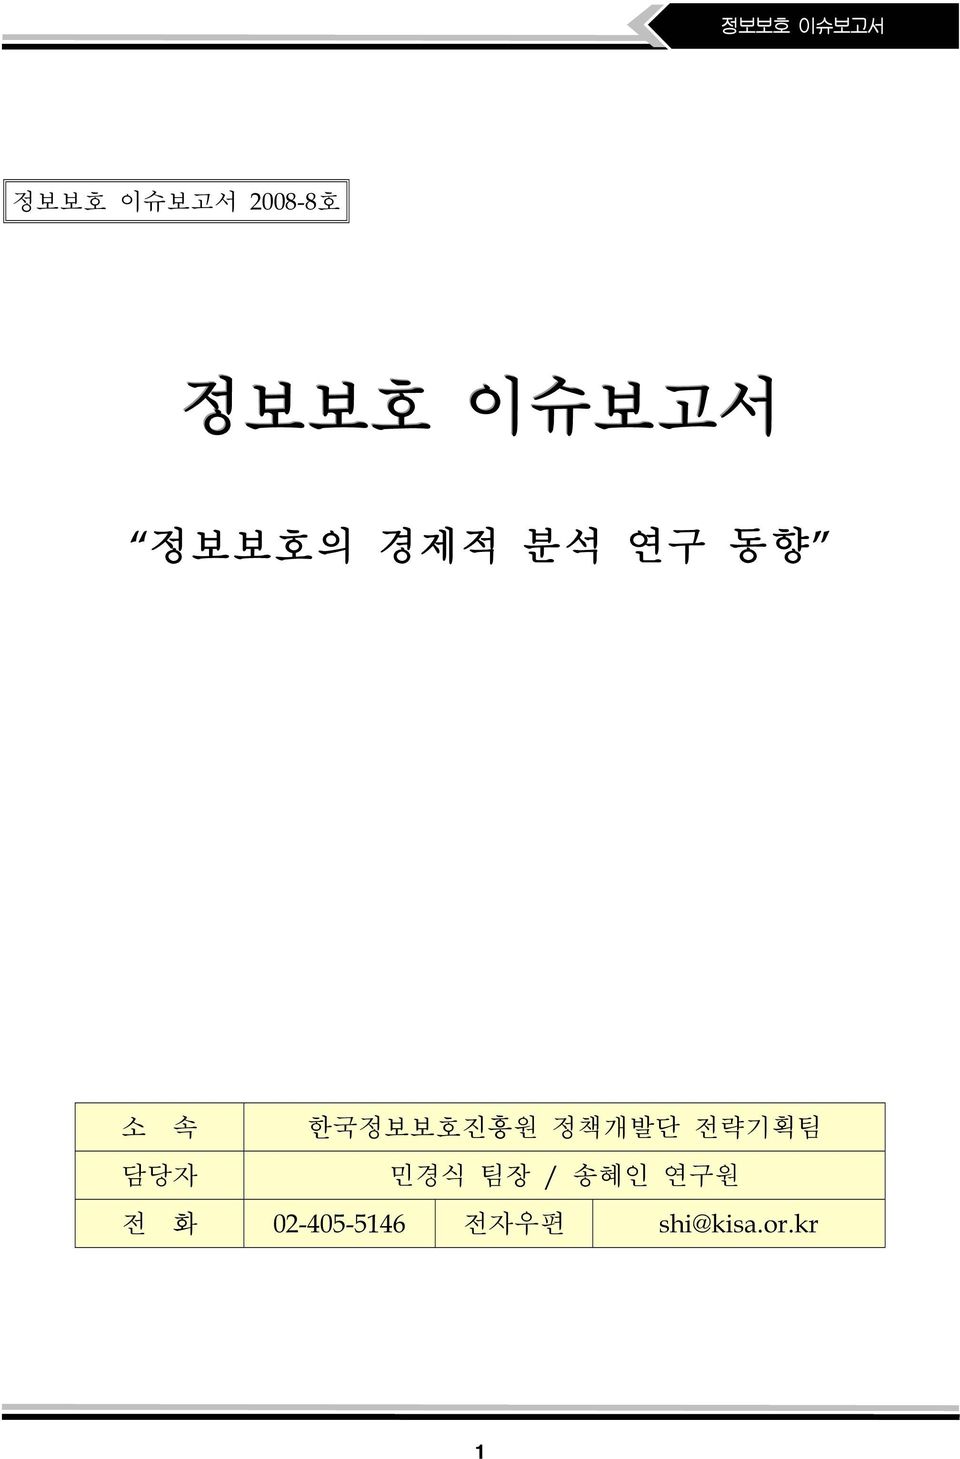 정책개발단 전략기획팀 담당자 민경식 팀장 / 송혜인 연구원